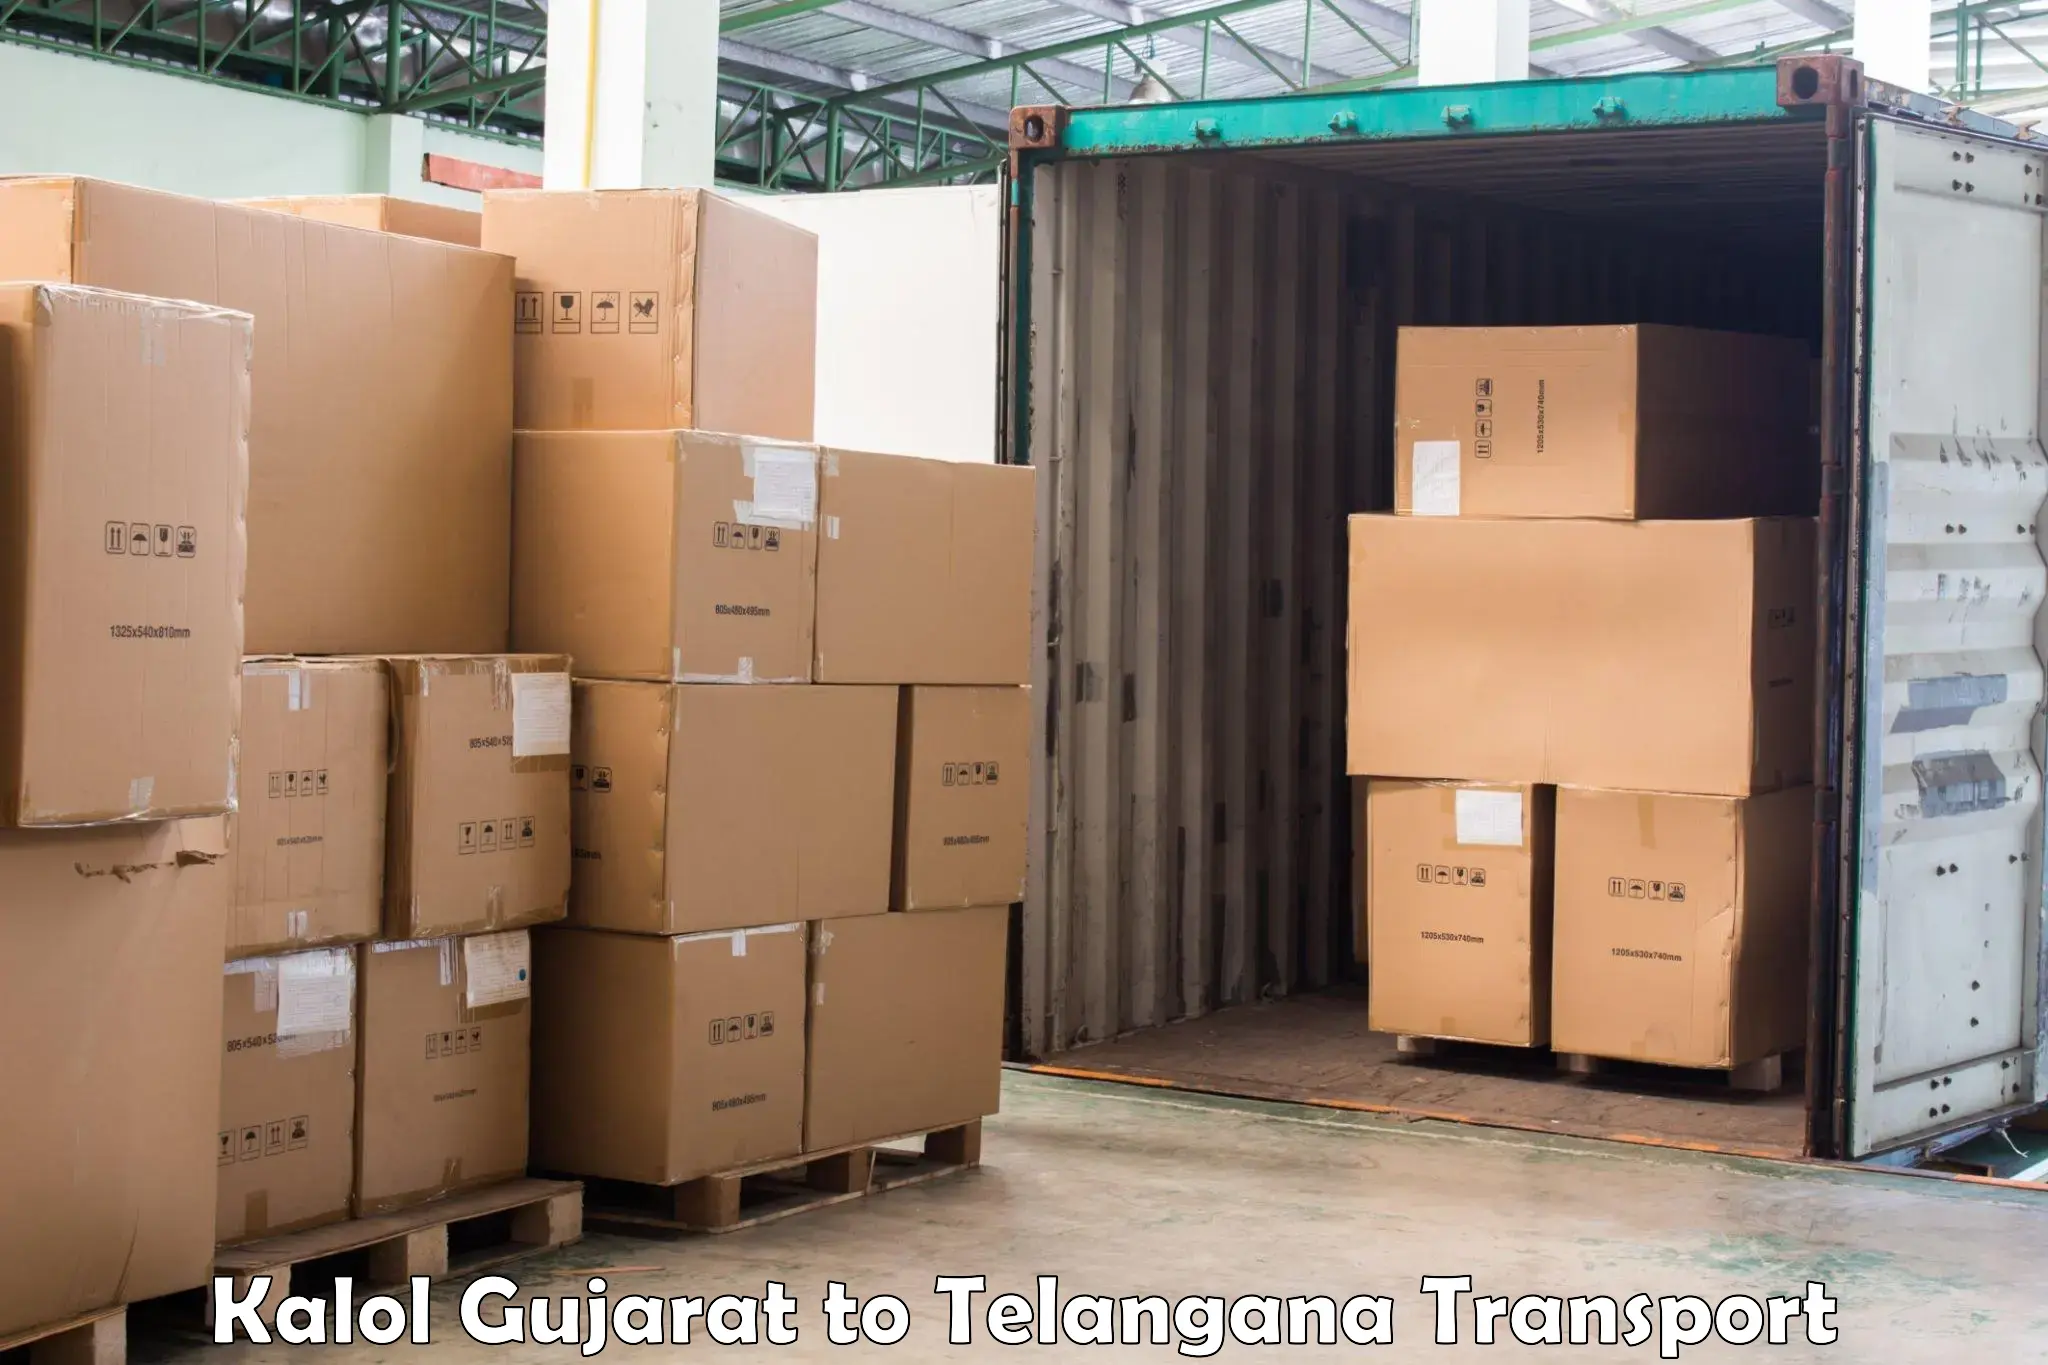 Air freight transport services Kalol Gujarat to Babasagar